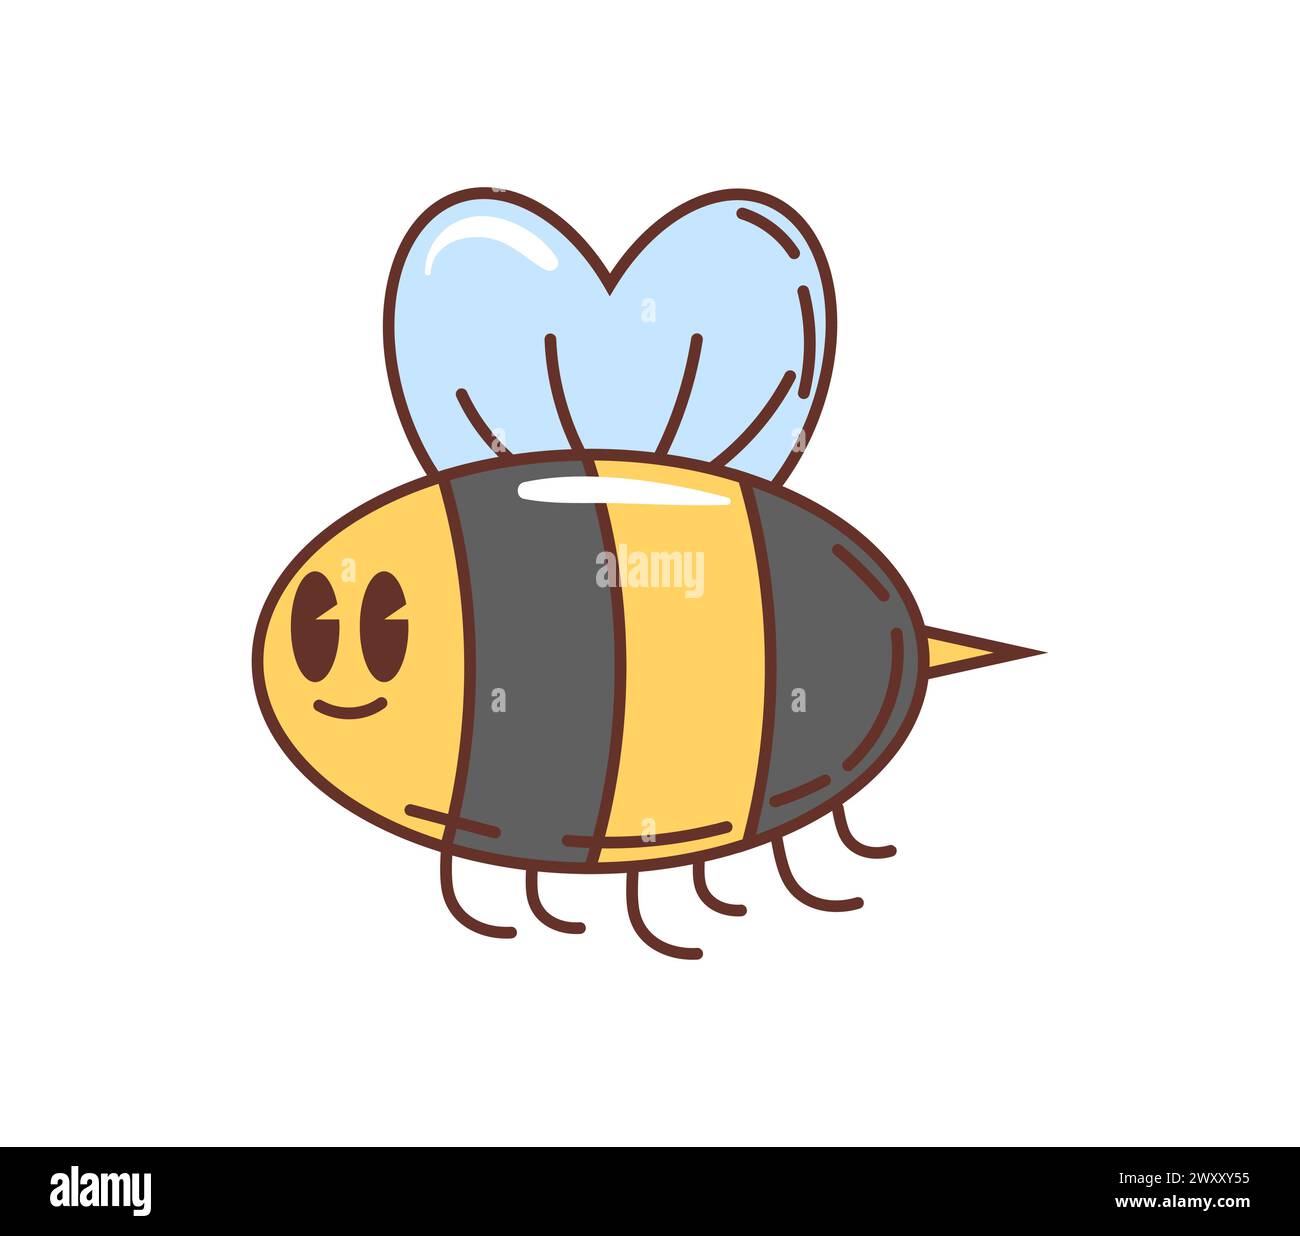 Personnage d'abeille groovy de dessin animé bourdonnant autour d'une attitude décontractée et de l'amour pour les airs funky. Vecteur isolé, abeille rayée jaune et noire avec des yeux googly, des ailes battantes et un sourire amical Illustration de Vecteur